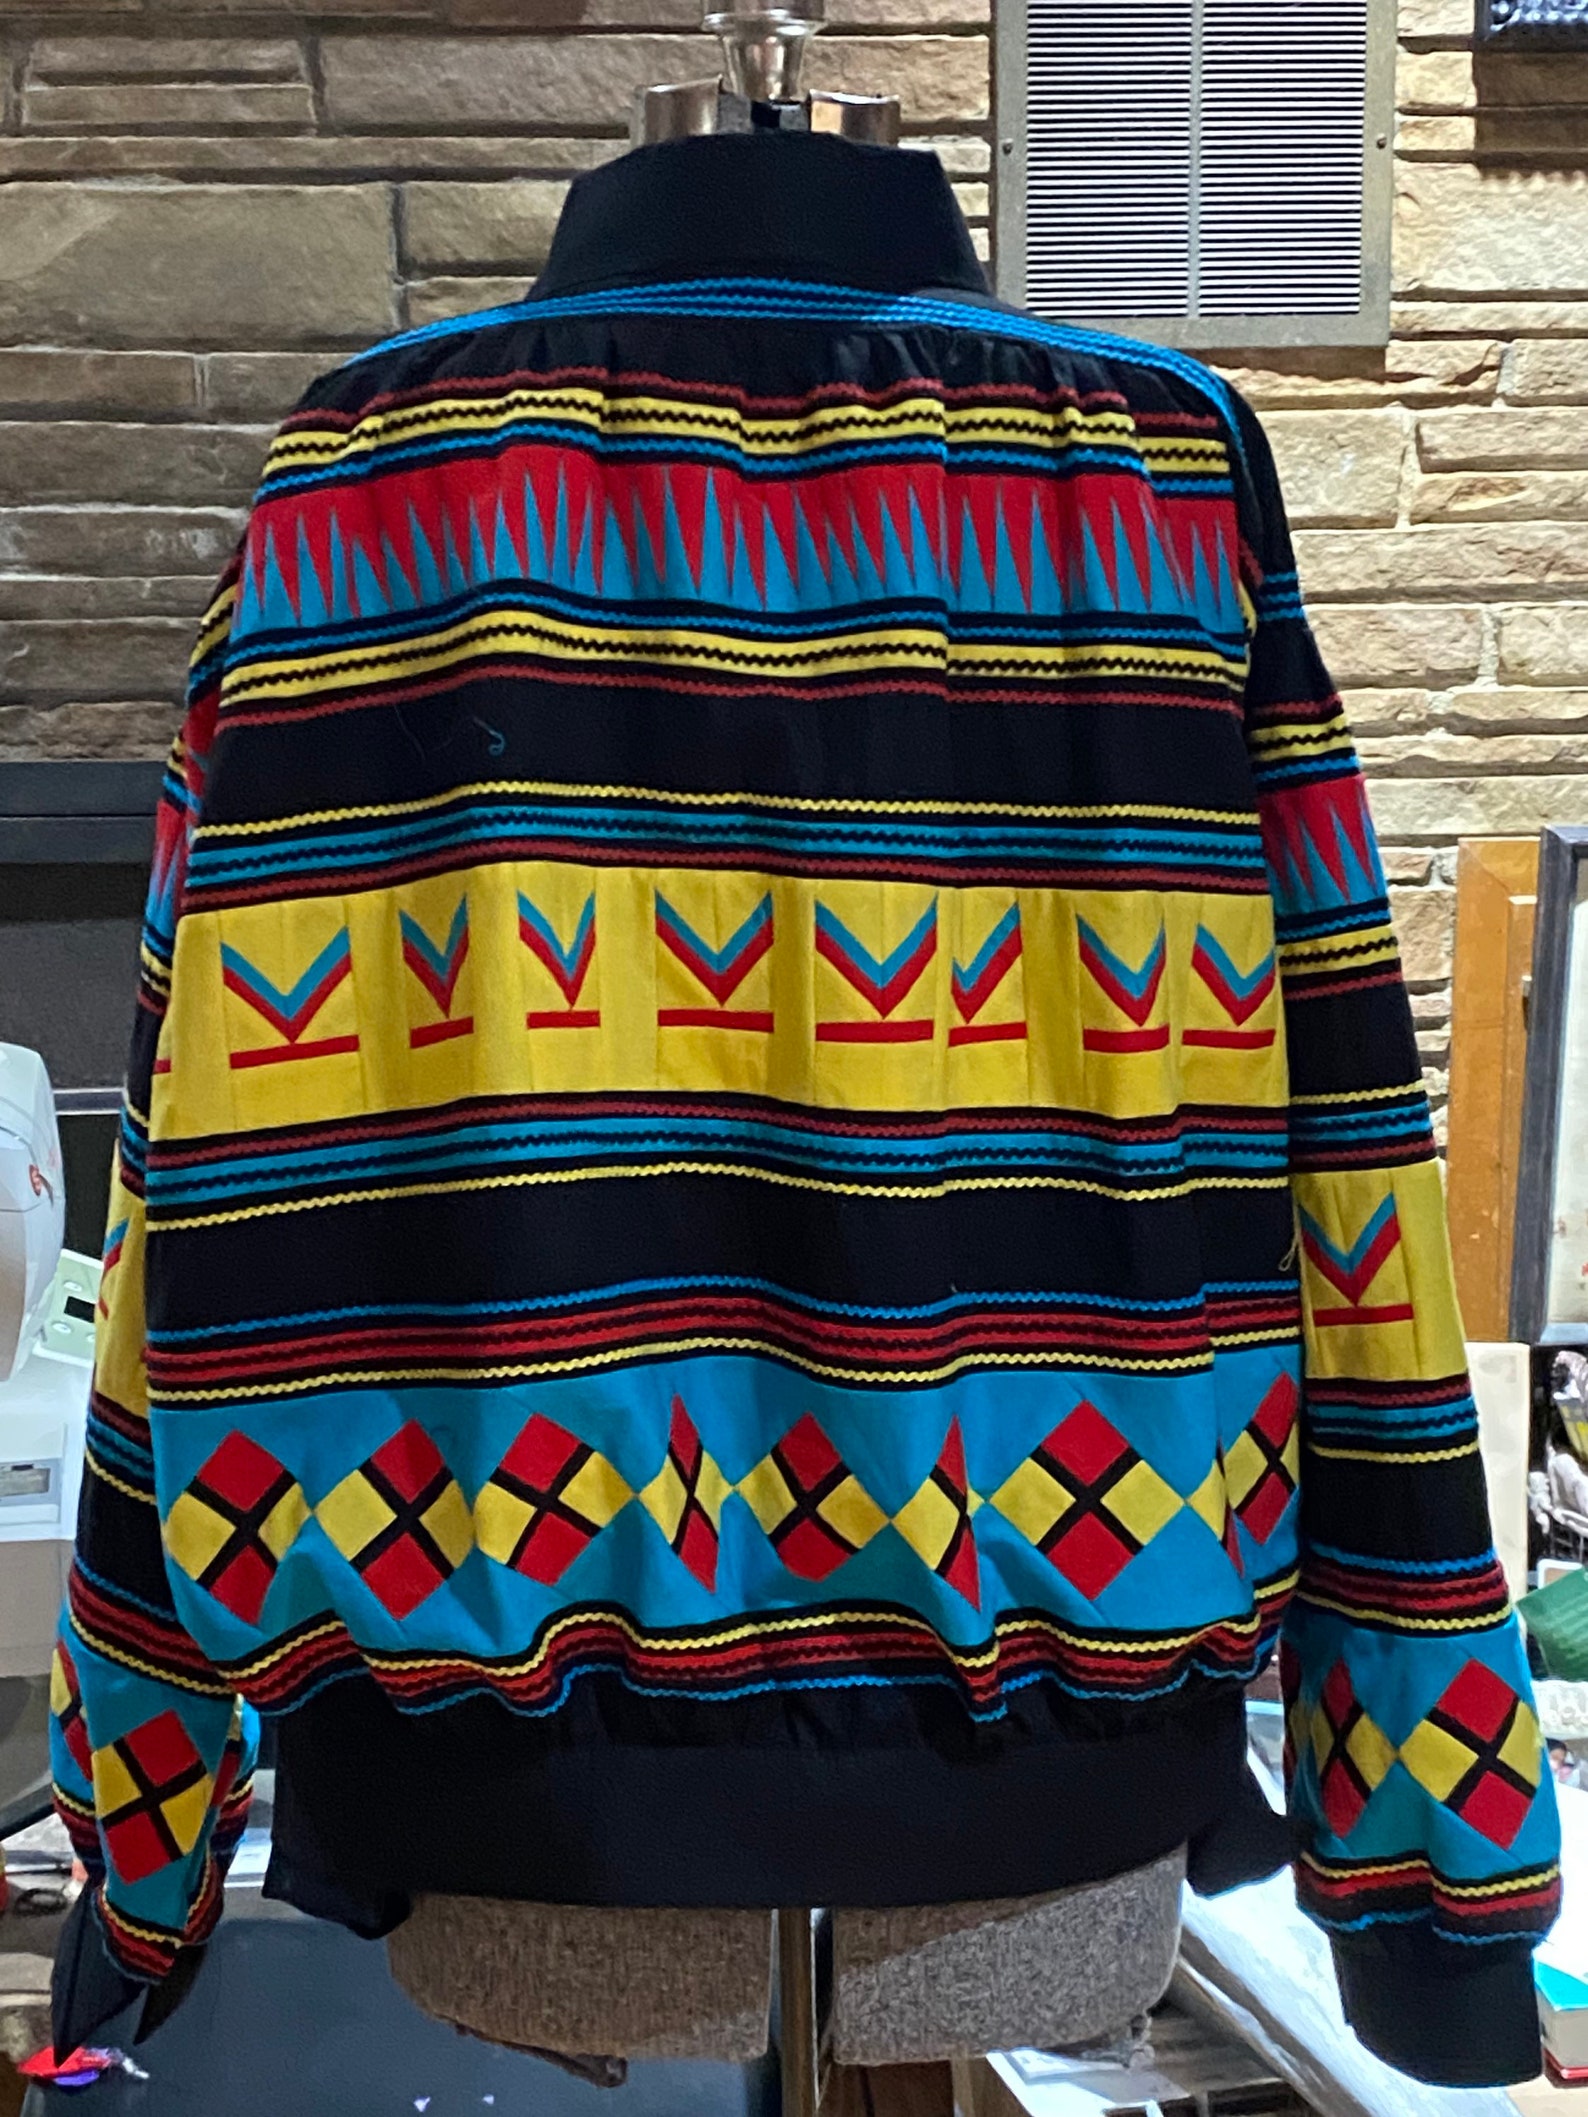 New Seminole Patchwork Jacket - Etsy UK